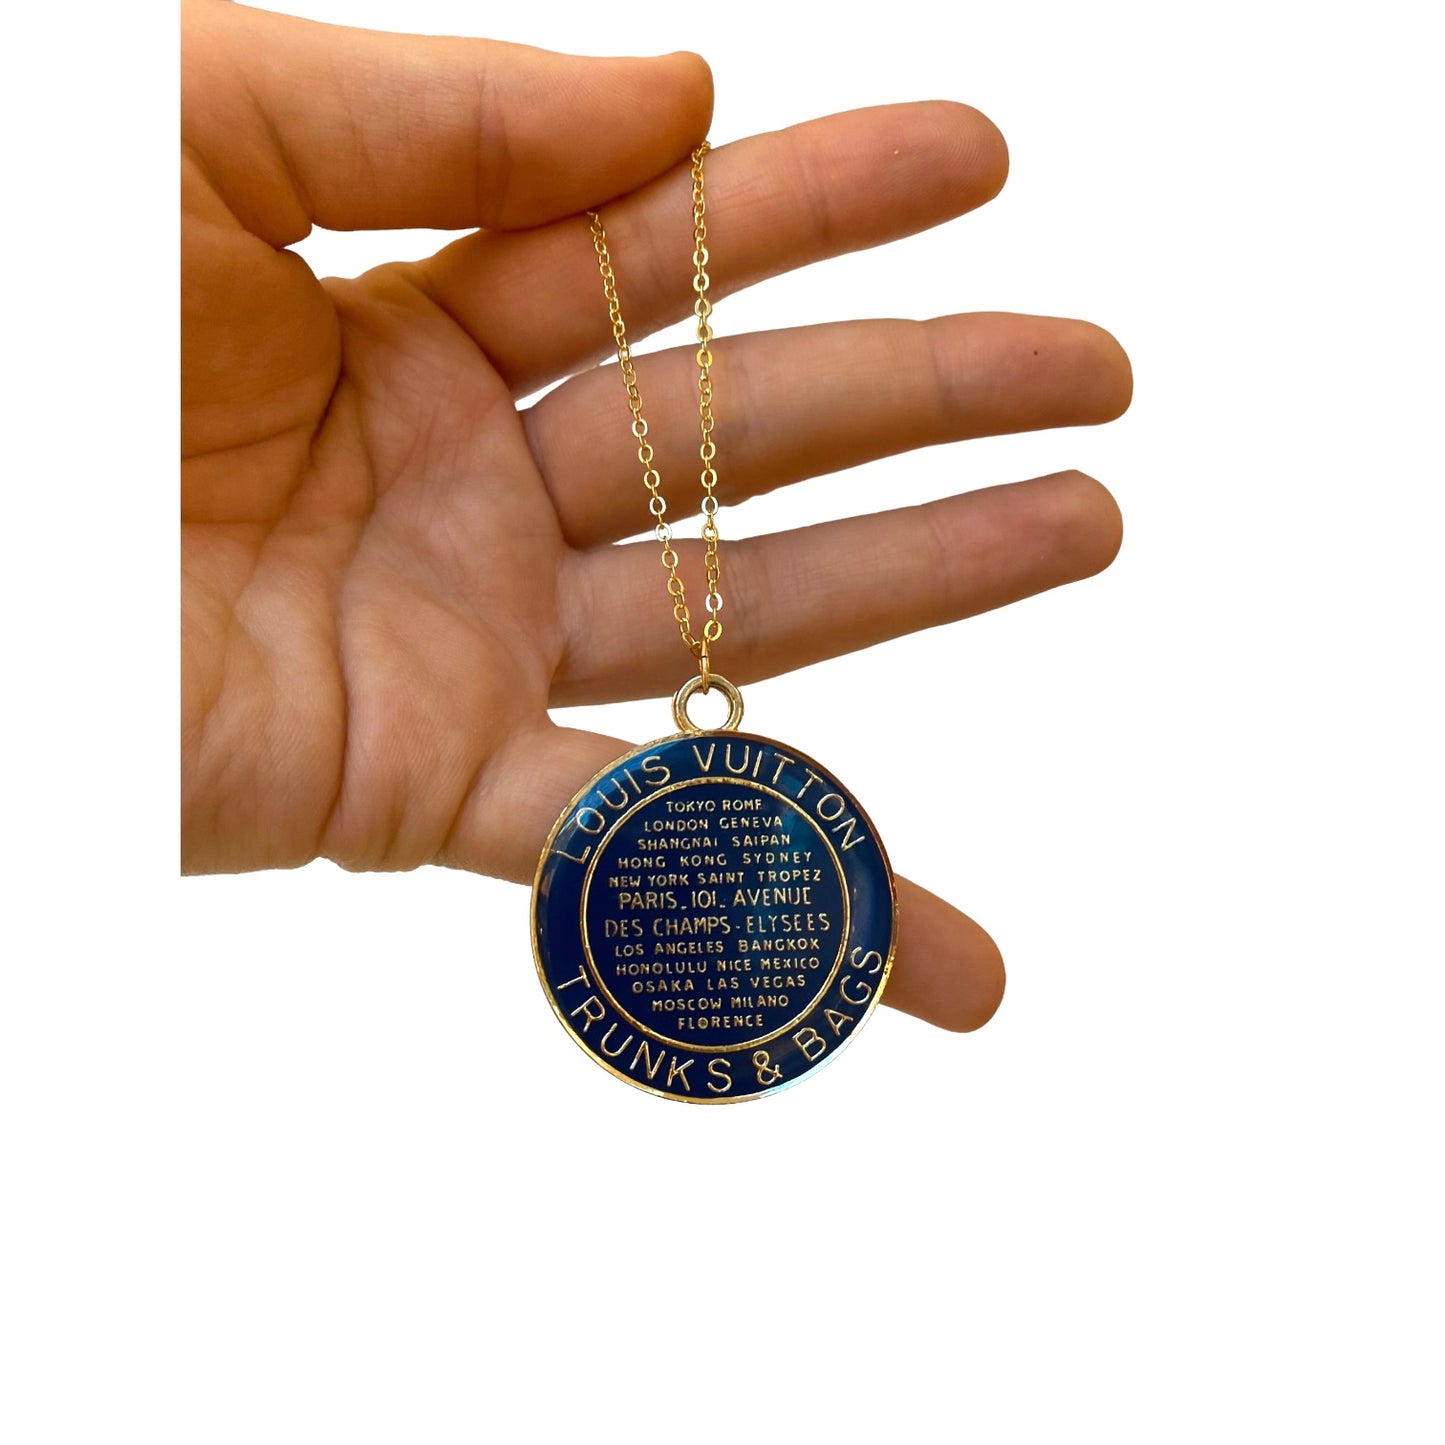 Louis Vuitton Necklace - Blue